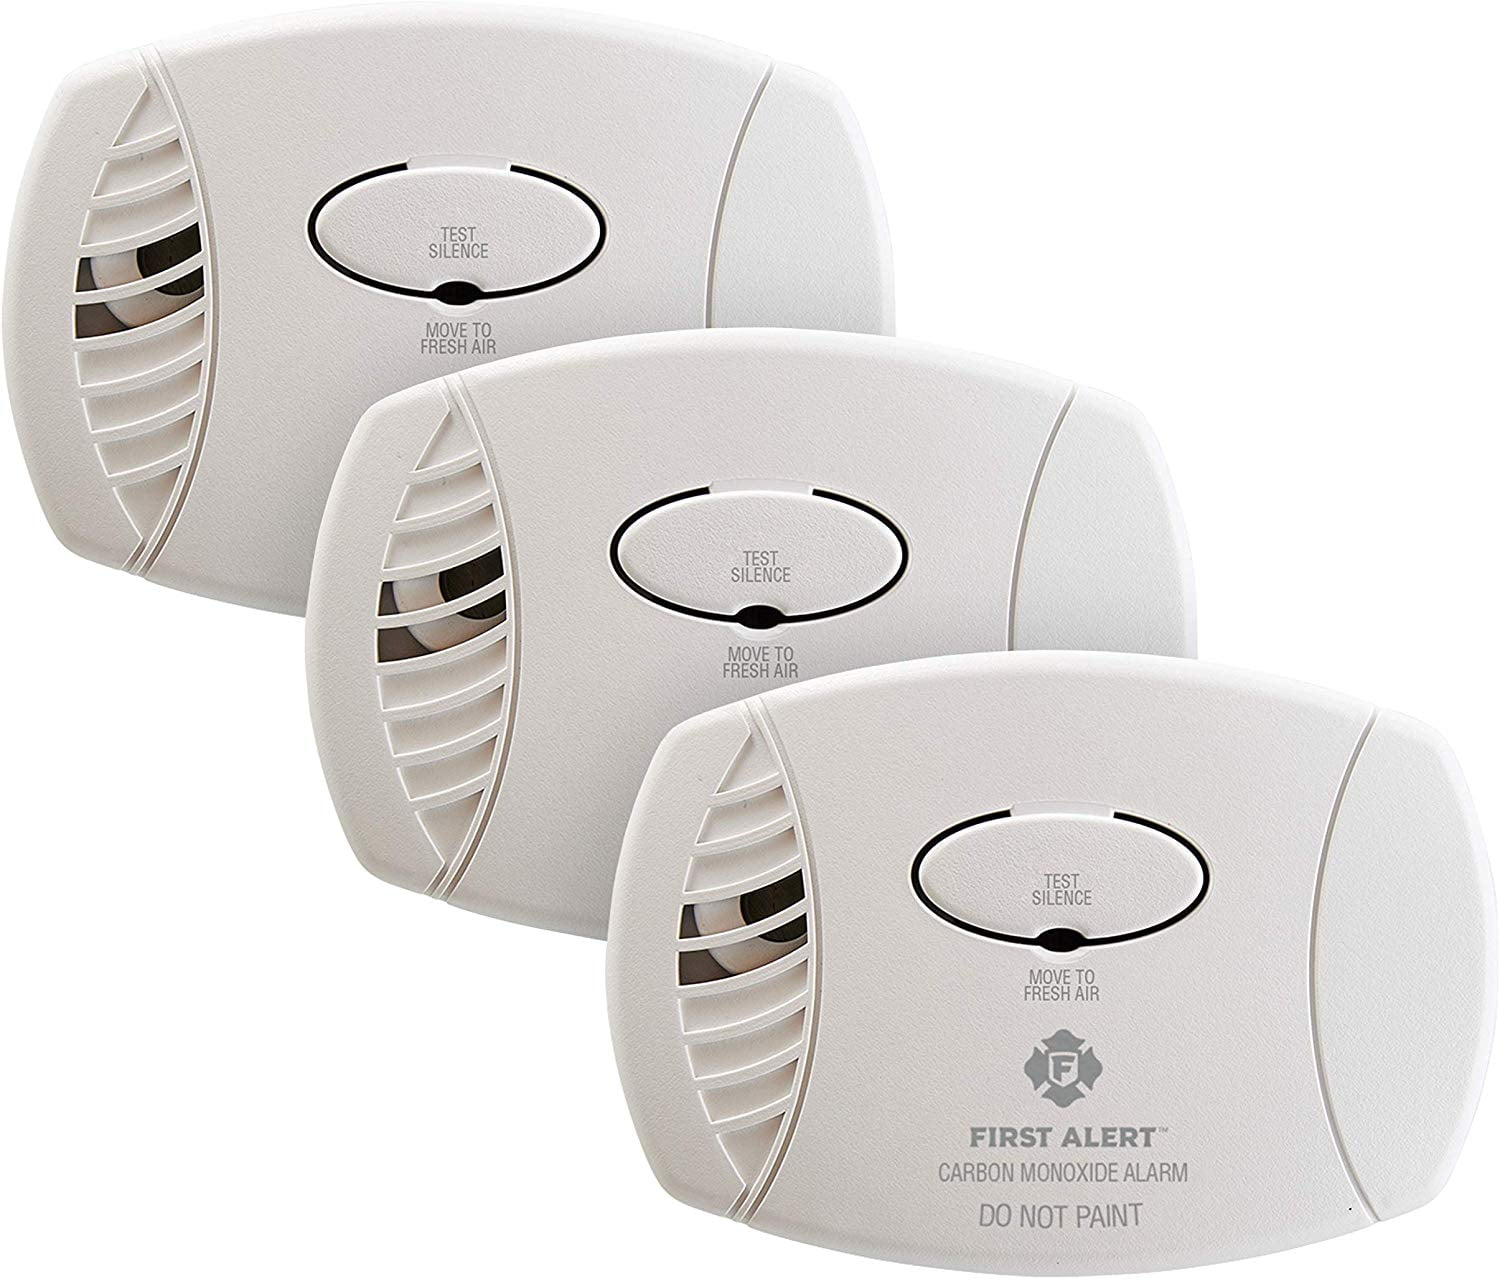 carbon monoxide detector home